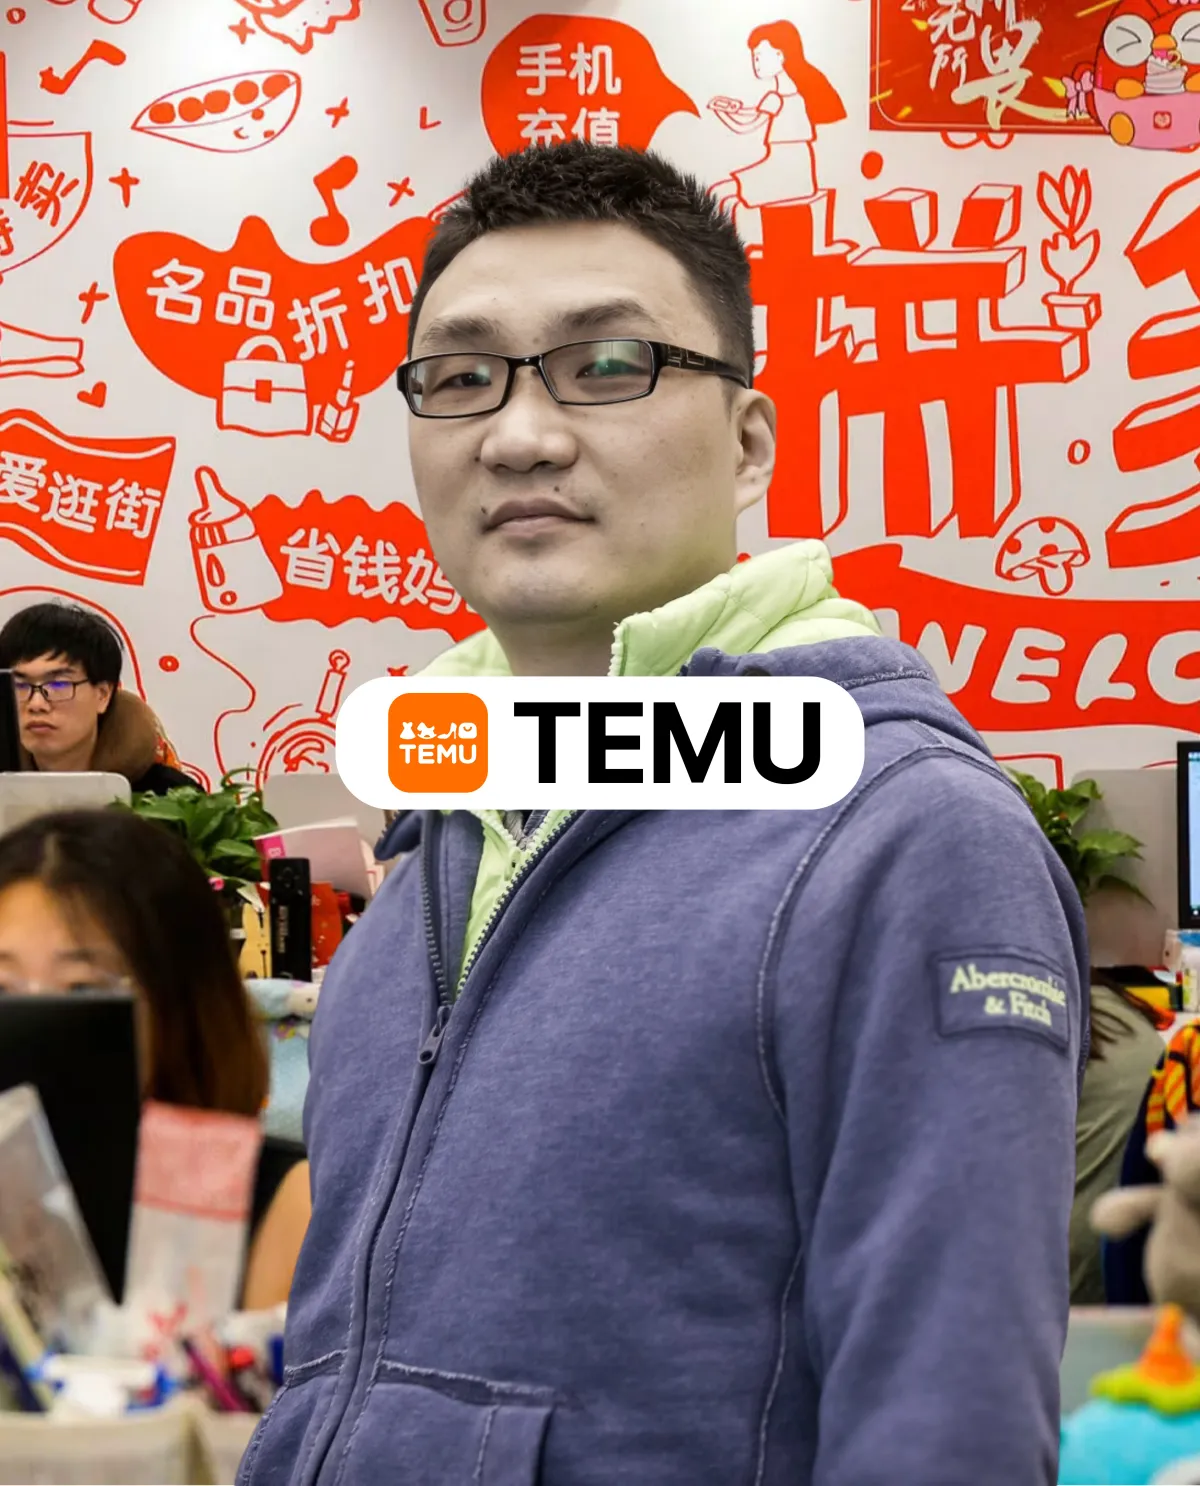 El dueño y fundador de Temu, Colin Huang